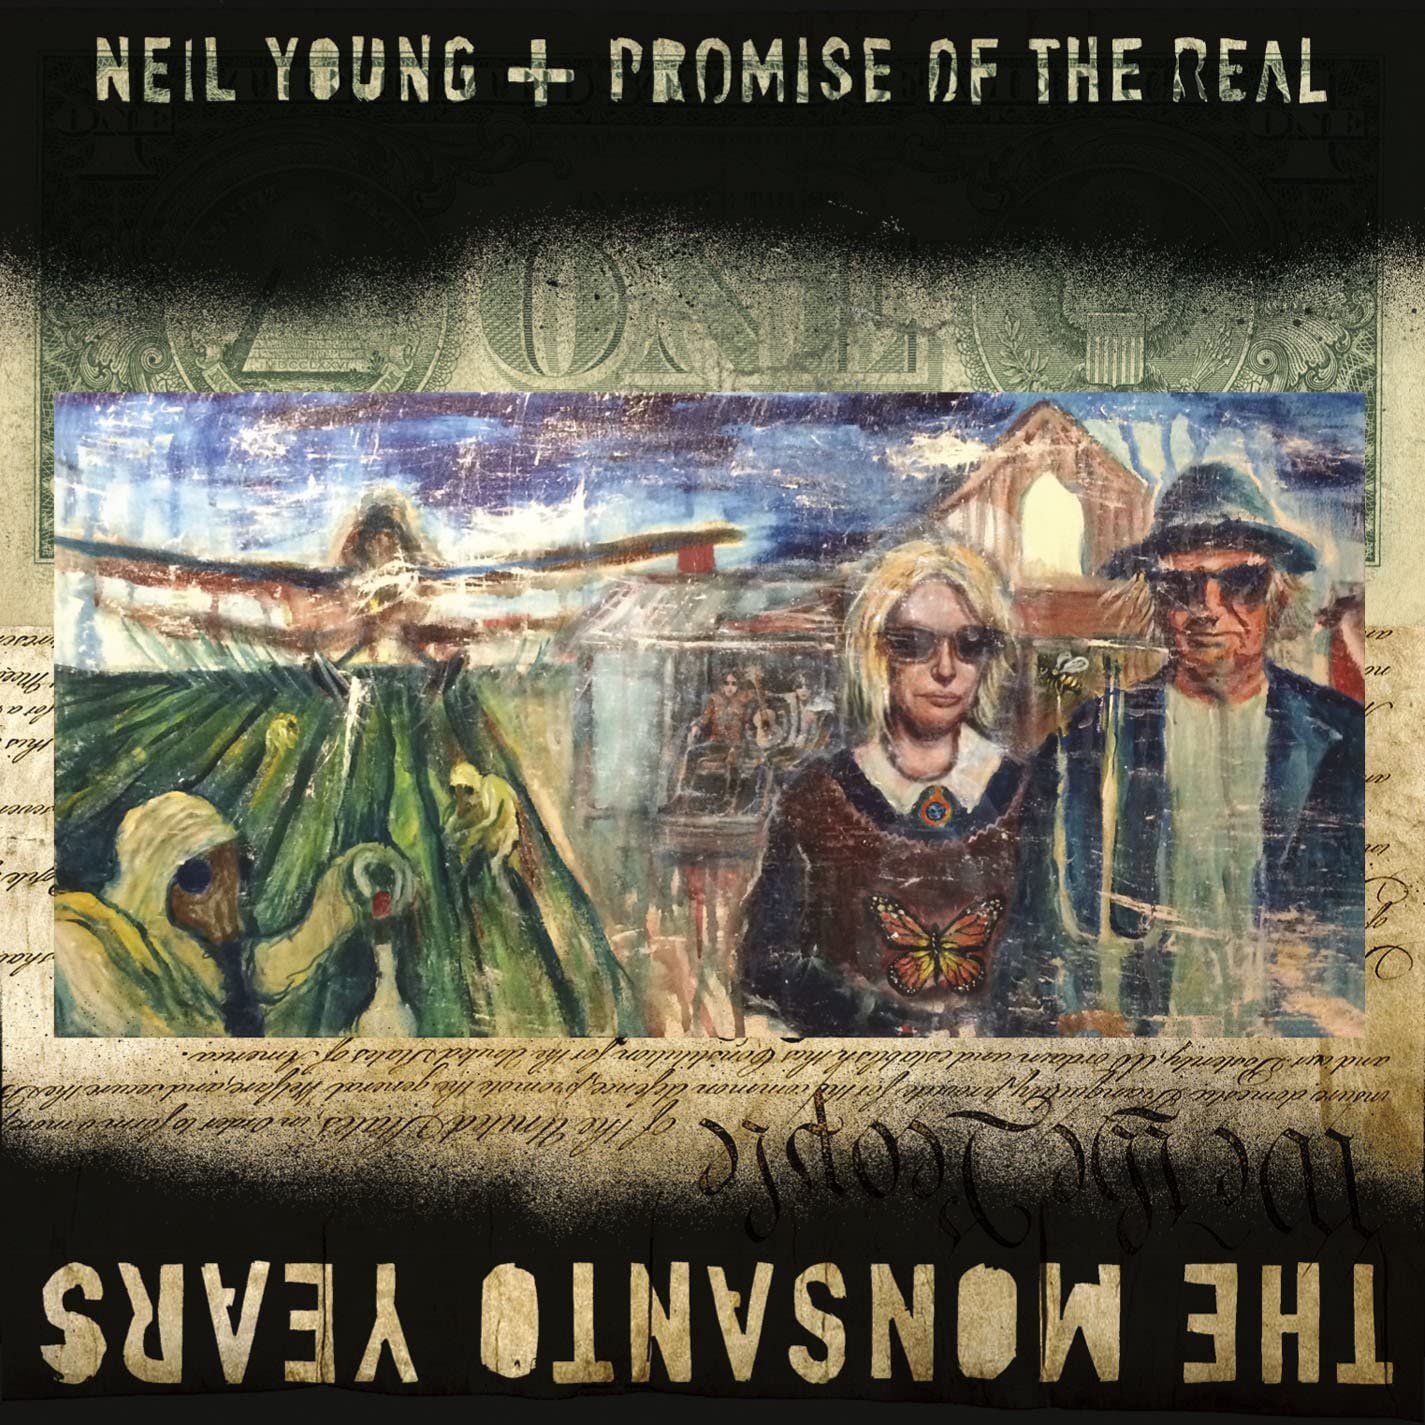 ซีดีเพลง CD Neil Young & crazy horse album 2015 The Monsanto Years,ในราคาพิเศษสุดเพียง159บาท